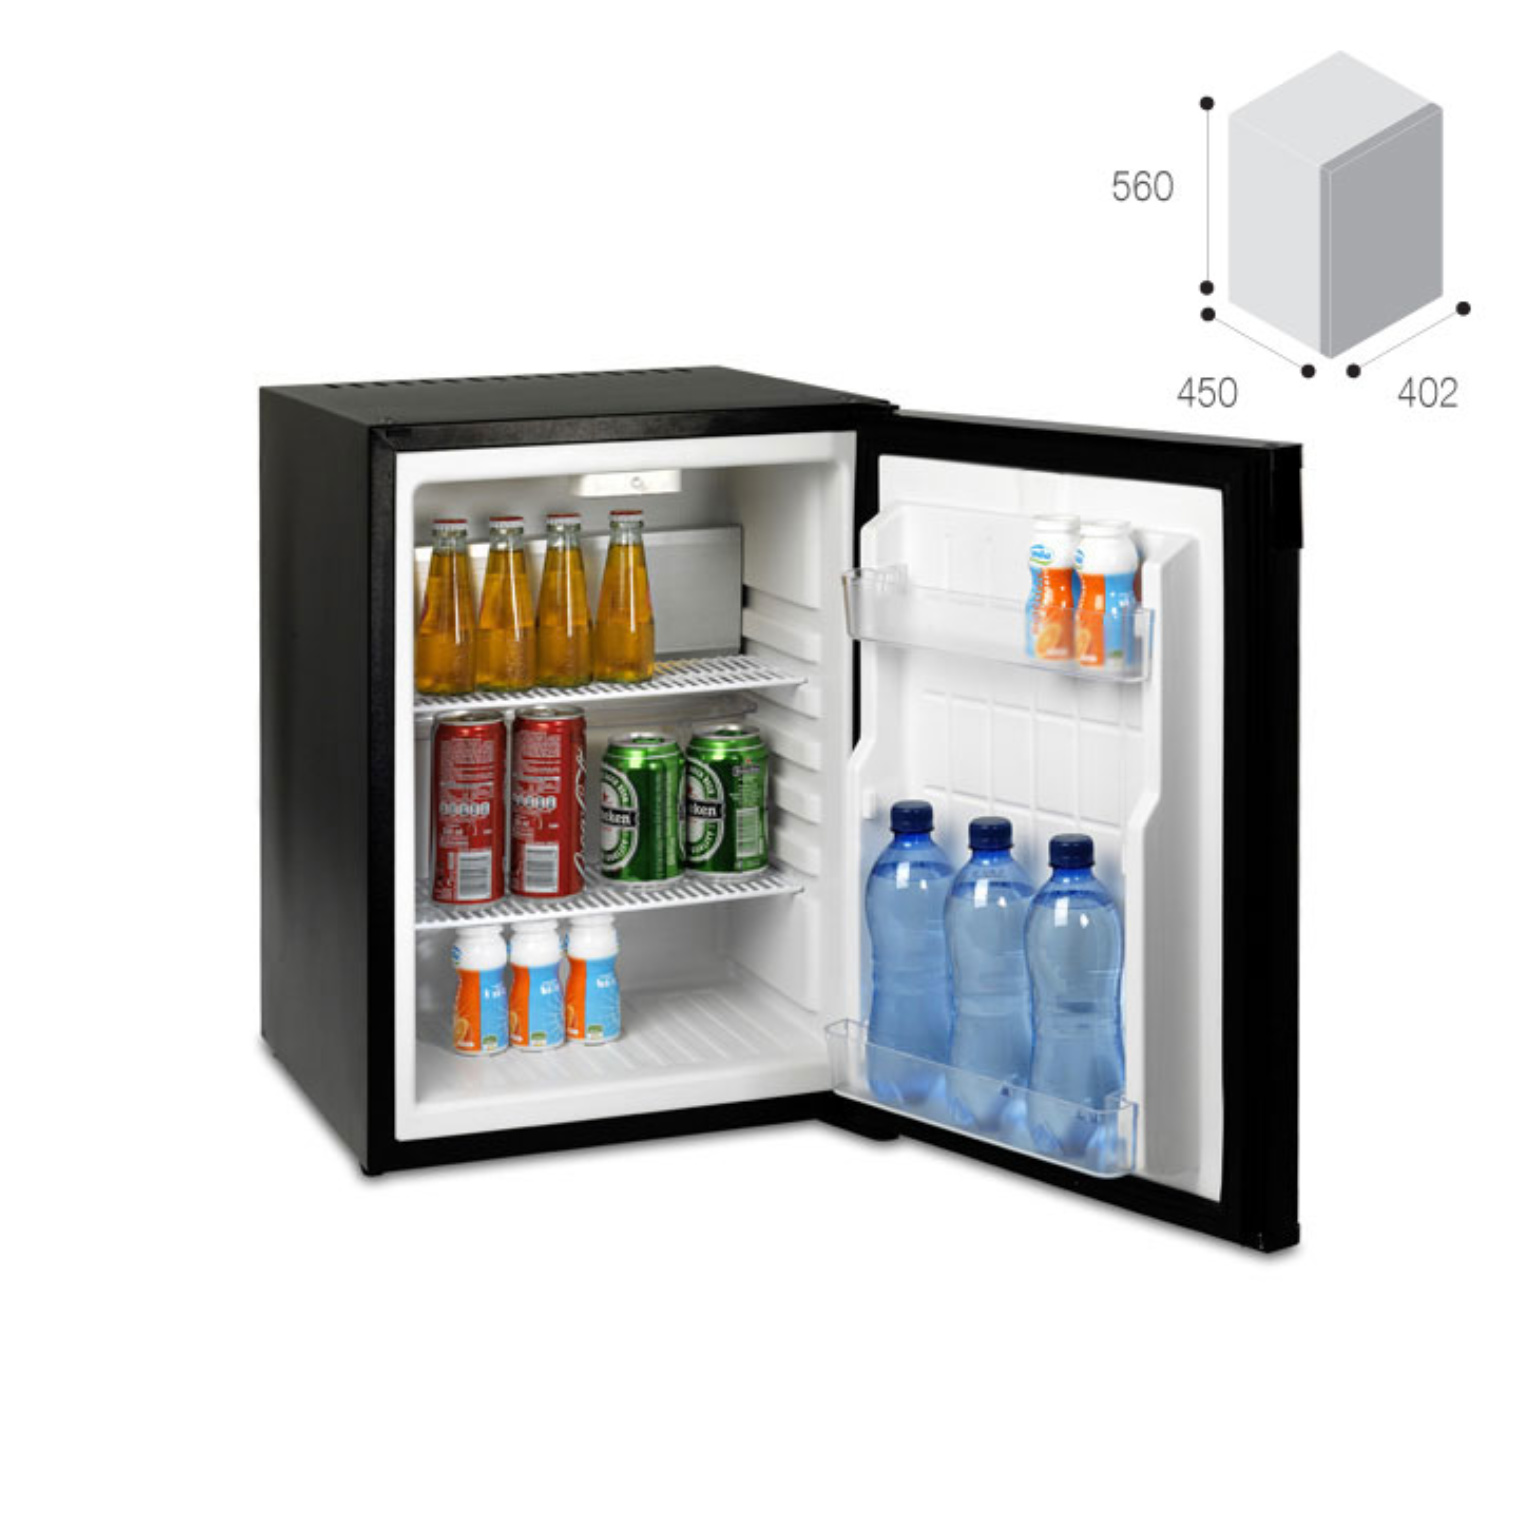 холодильные шкафы для дома маленькие